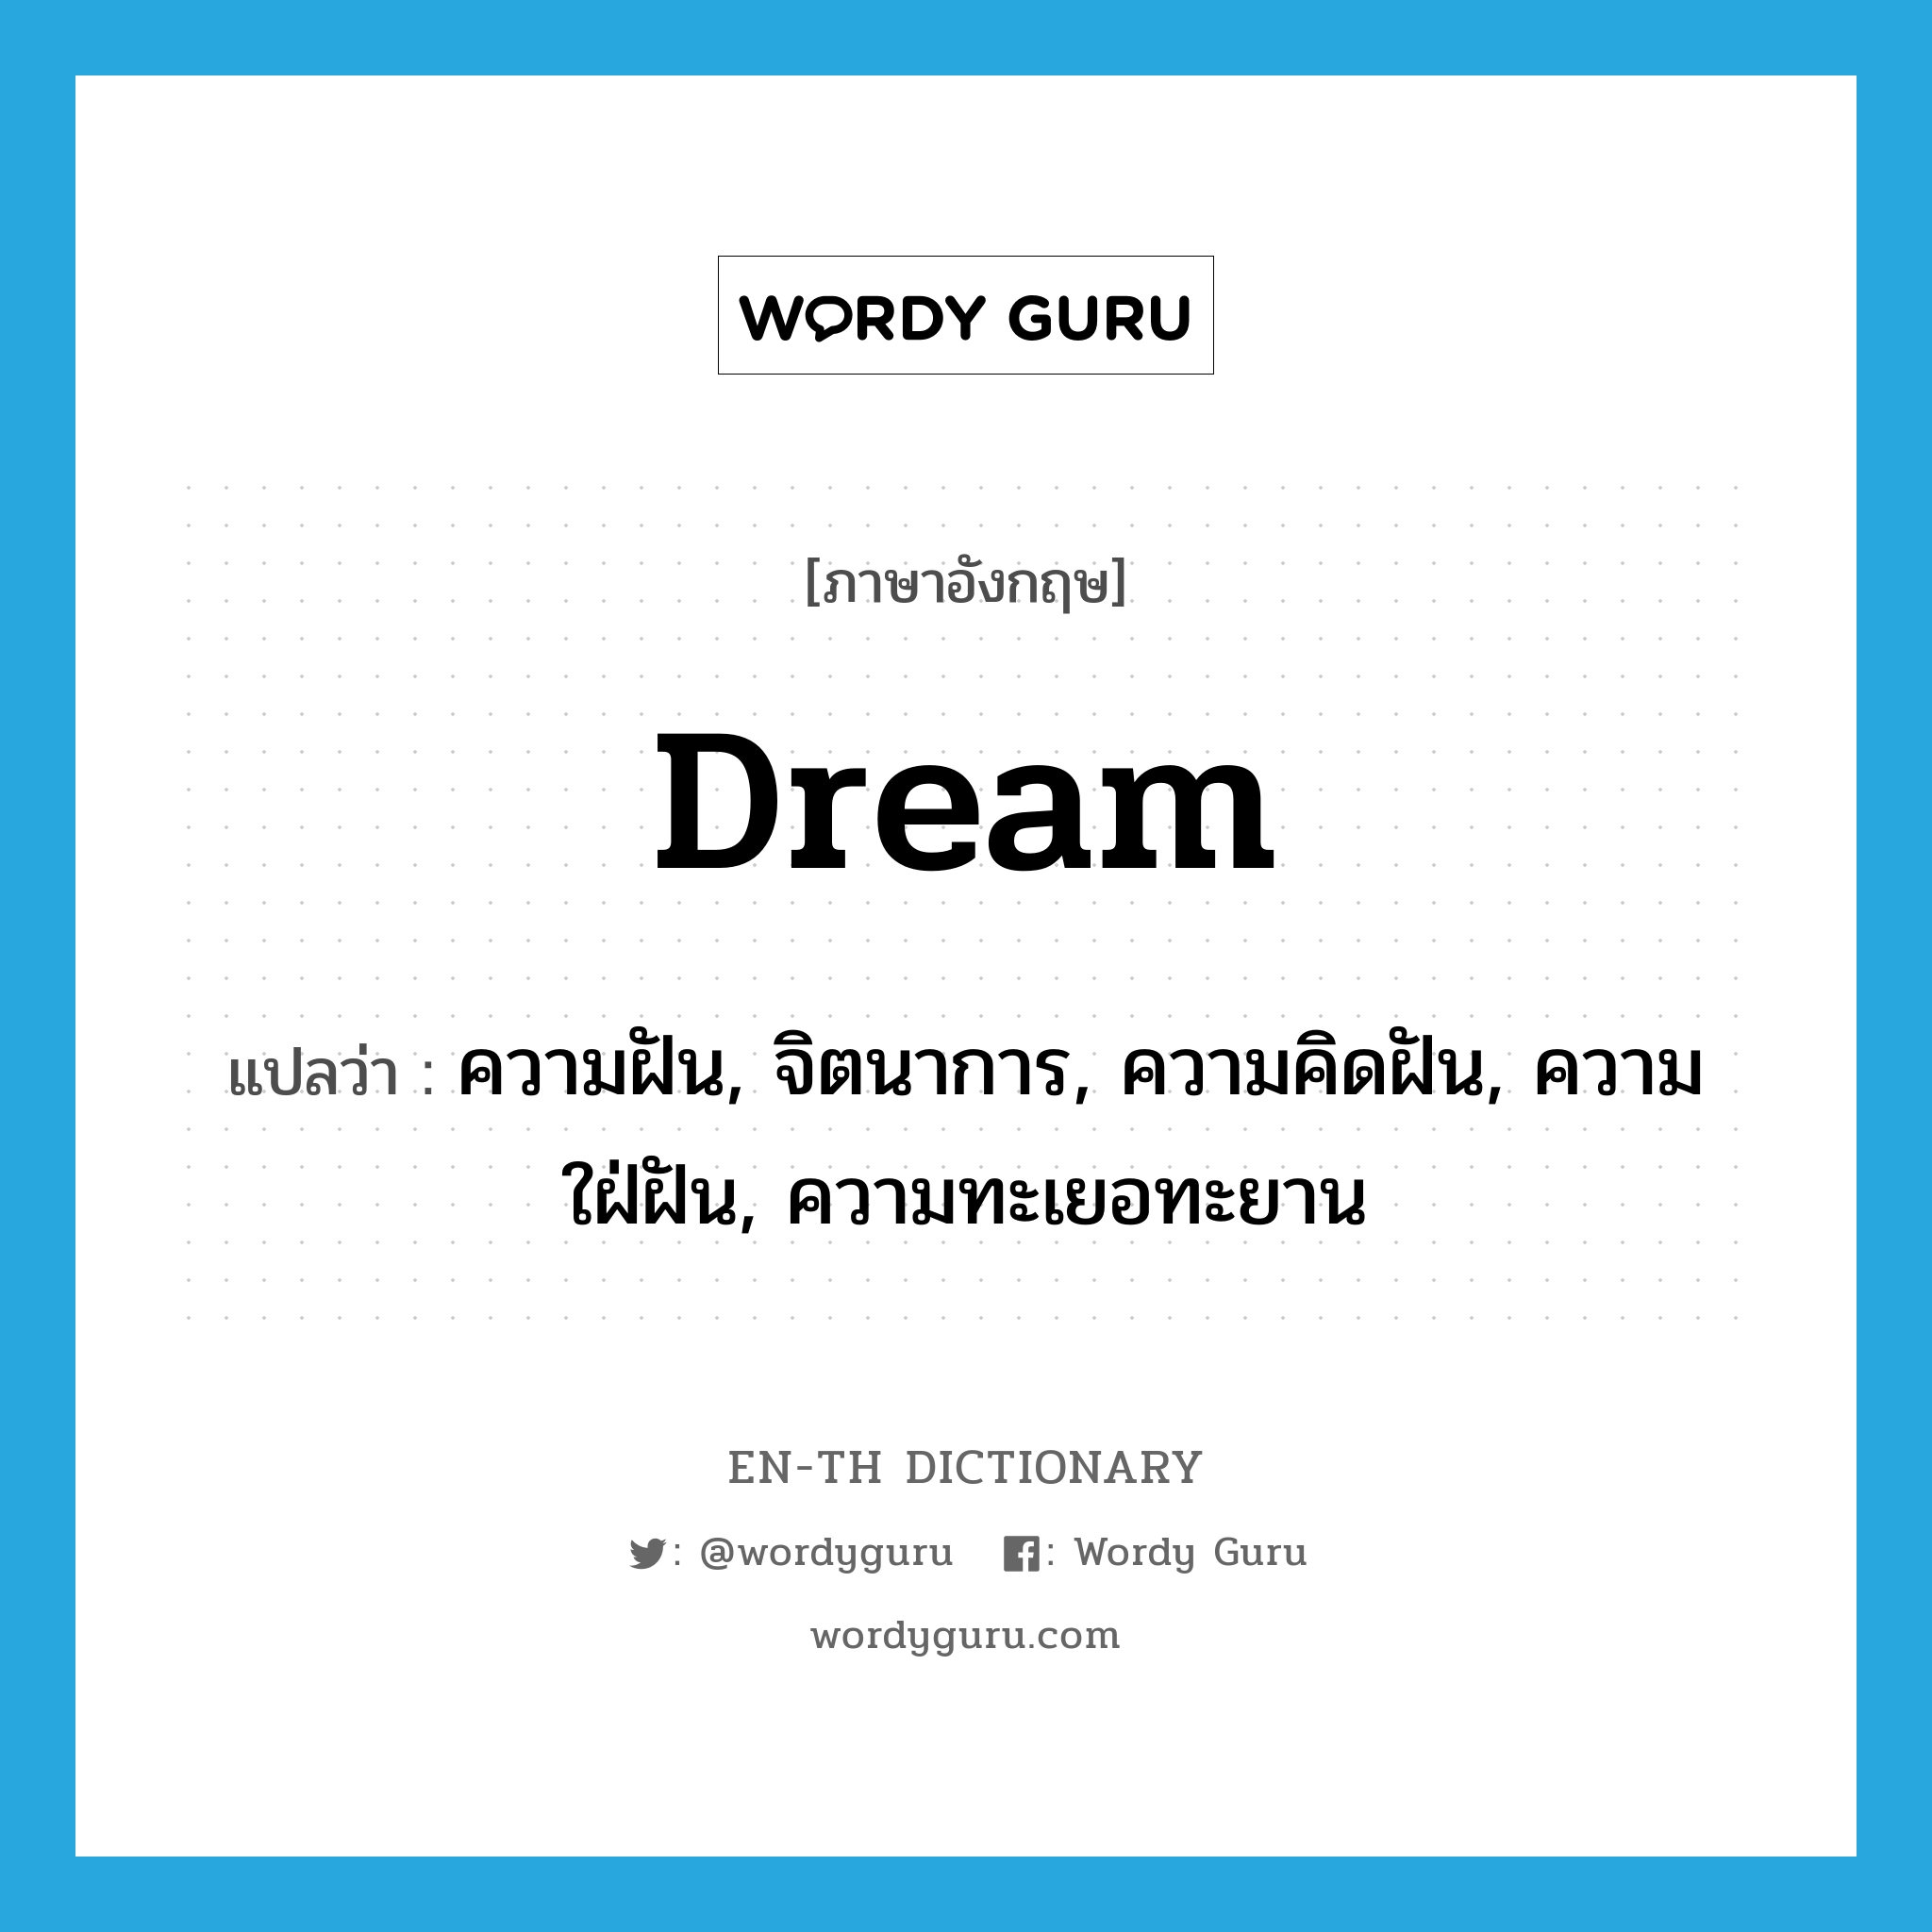 dream แปลว่า?, คำศัพท์ภาษาอังกฤษ dream แปลว่า ความฝัน, จิตนาการ, ความคิดฝัน, ความใฝ่ฝัน, ความทะเยอทะยาน ประเภท N หมวด N